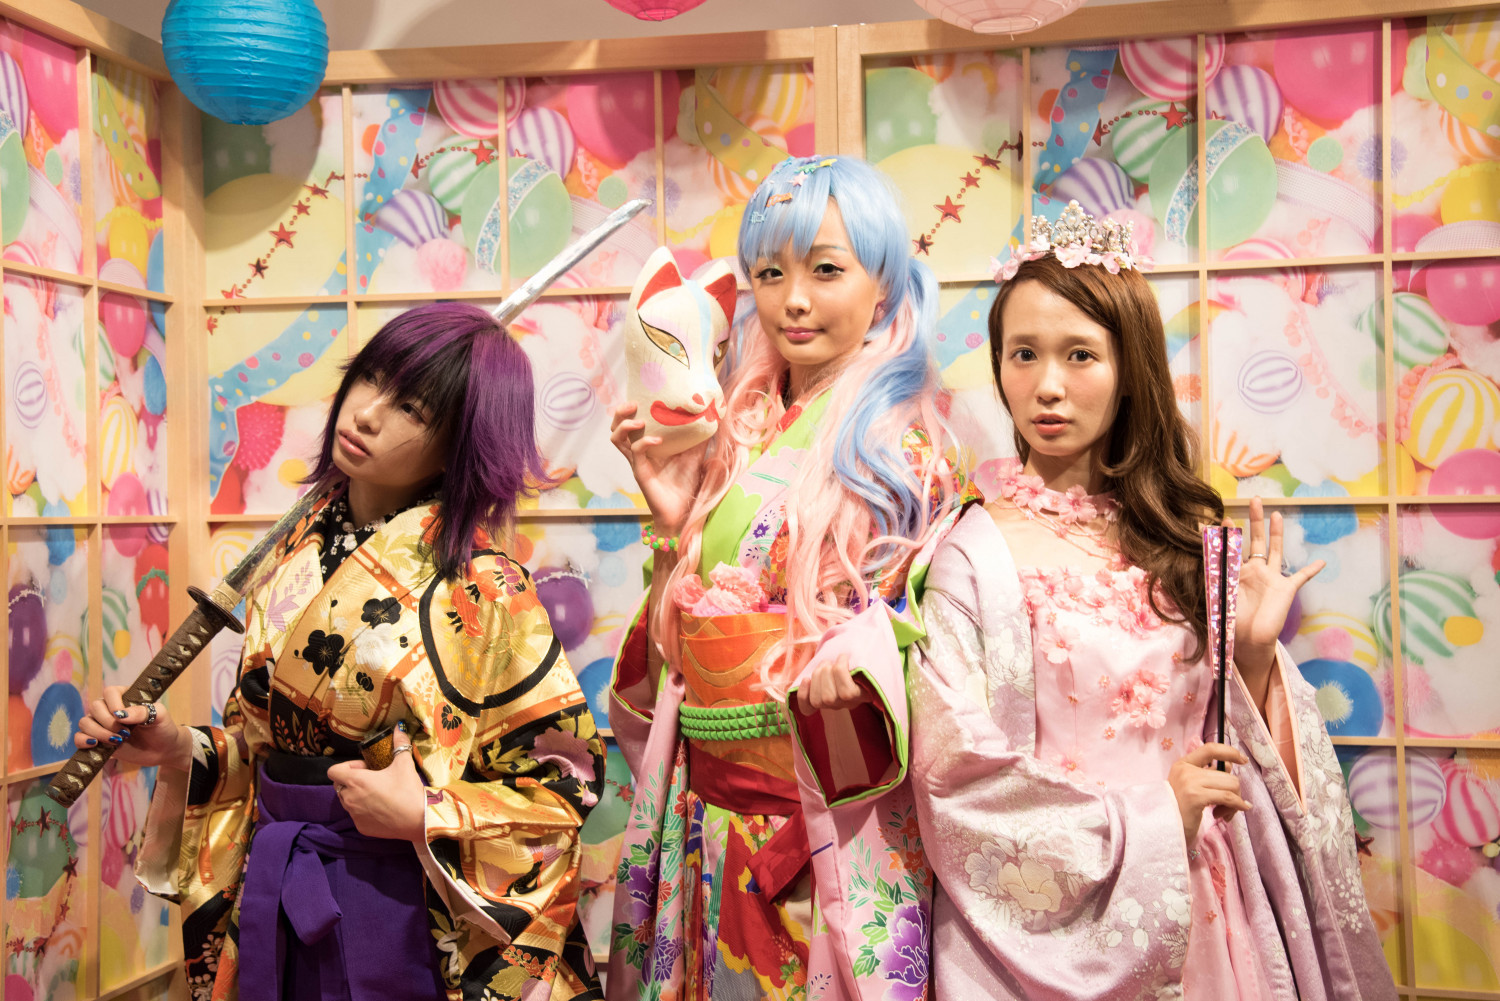 Wear Fashionable Kimono and Strike A Pose at Moshi Moshi Kimono Salon!